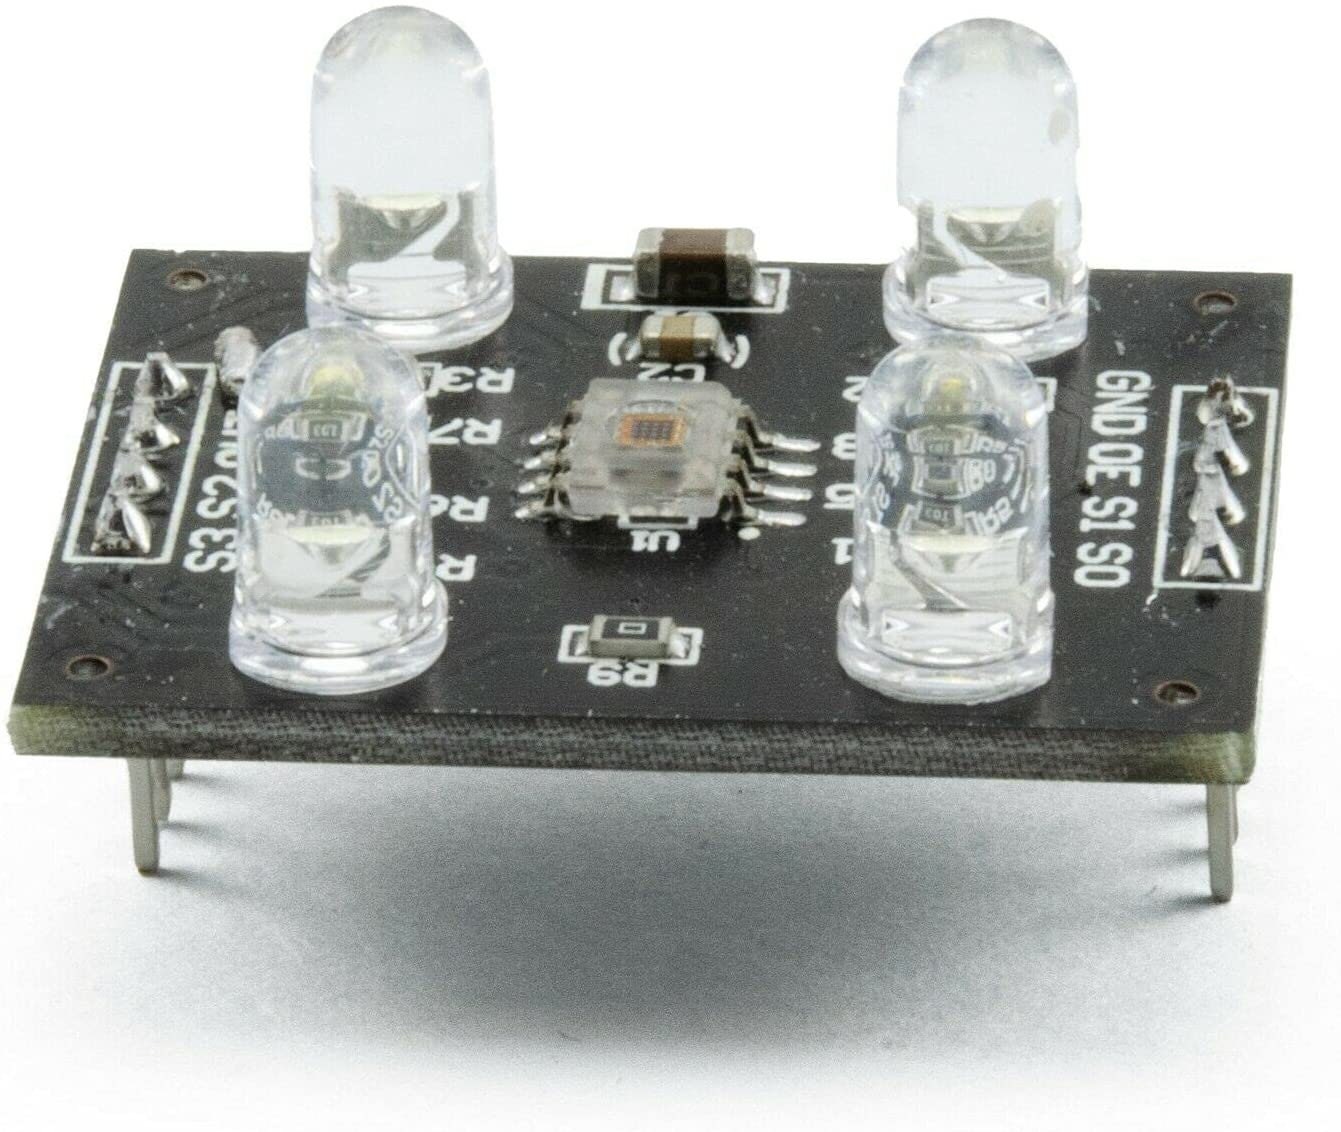 1PCS TCS230 TCS3200 Detector Module Color Recognition Sensor for MCU Arduino 